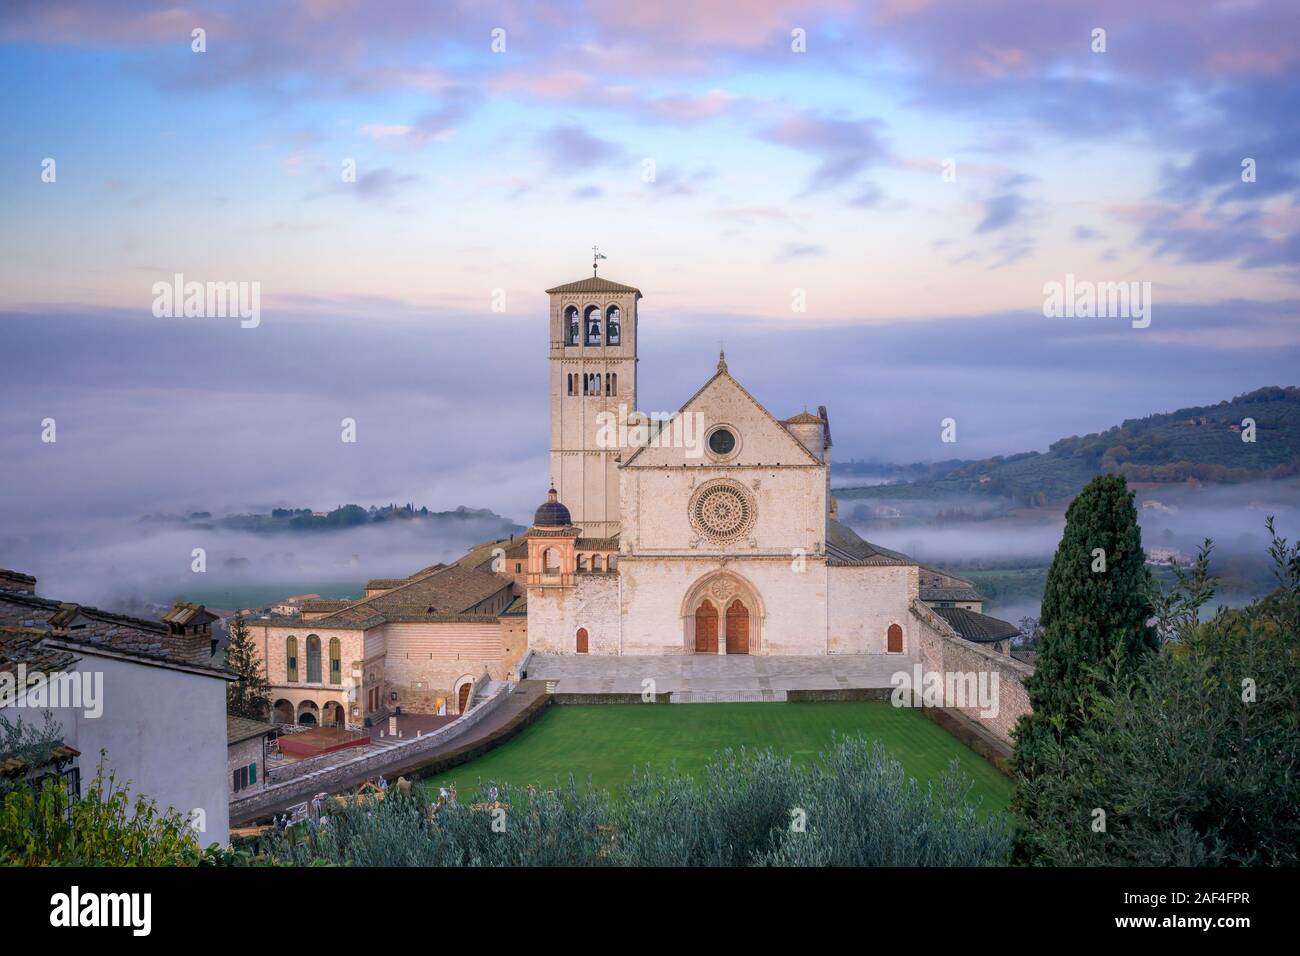 La maestosa Basilica di San Francesco in Assisi, Italia. Fotografato dal di sopra all'alba, tra la nebbia di mattina e il cielo nuvoloso su un giorno d'inverno. Foto Stock